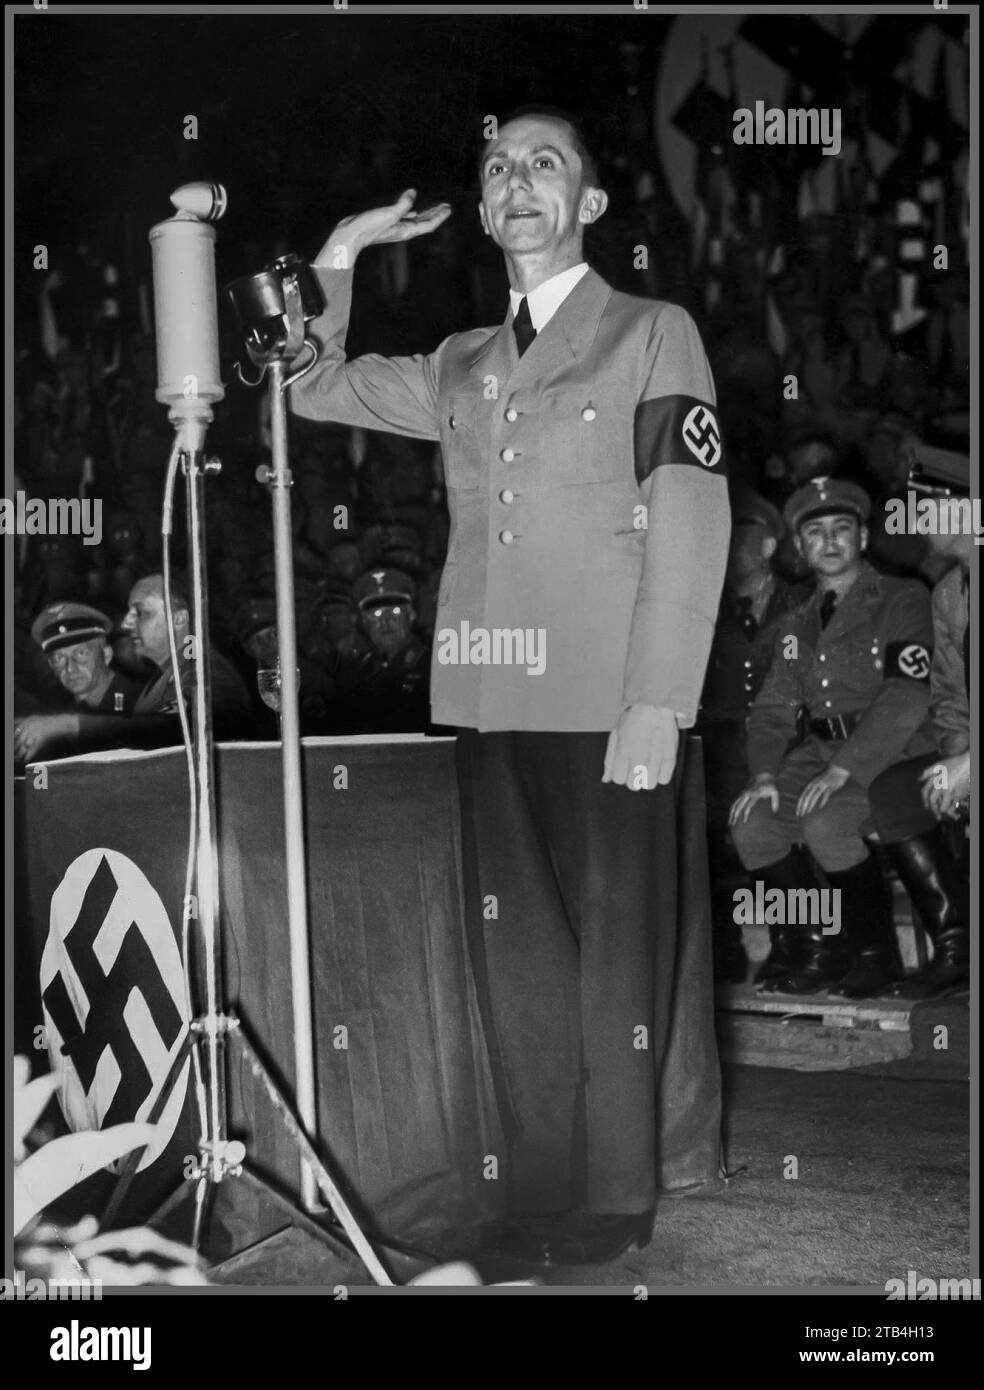 GOEBBELS 1930 Joseph Goebbels lors d'un rassemblement politique saluant les nazis il était un tristement célèbre stratège de propagande nazi, Joseph Goebbels portant un uniforme militaire avec un brassard swastika lors d'un rassemblement nazi dans les années 1930 Banque D'Images